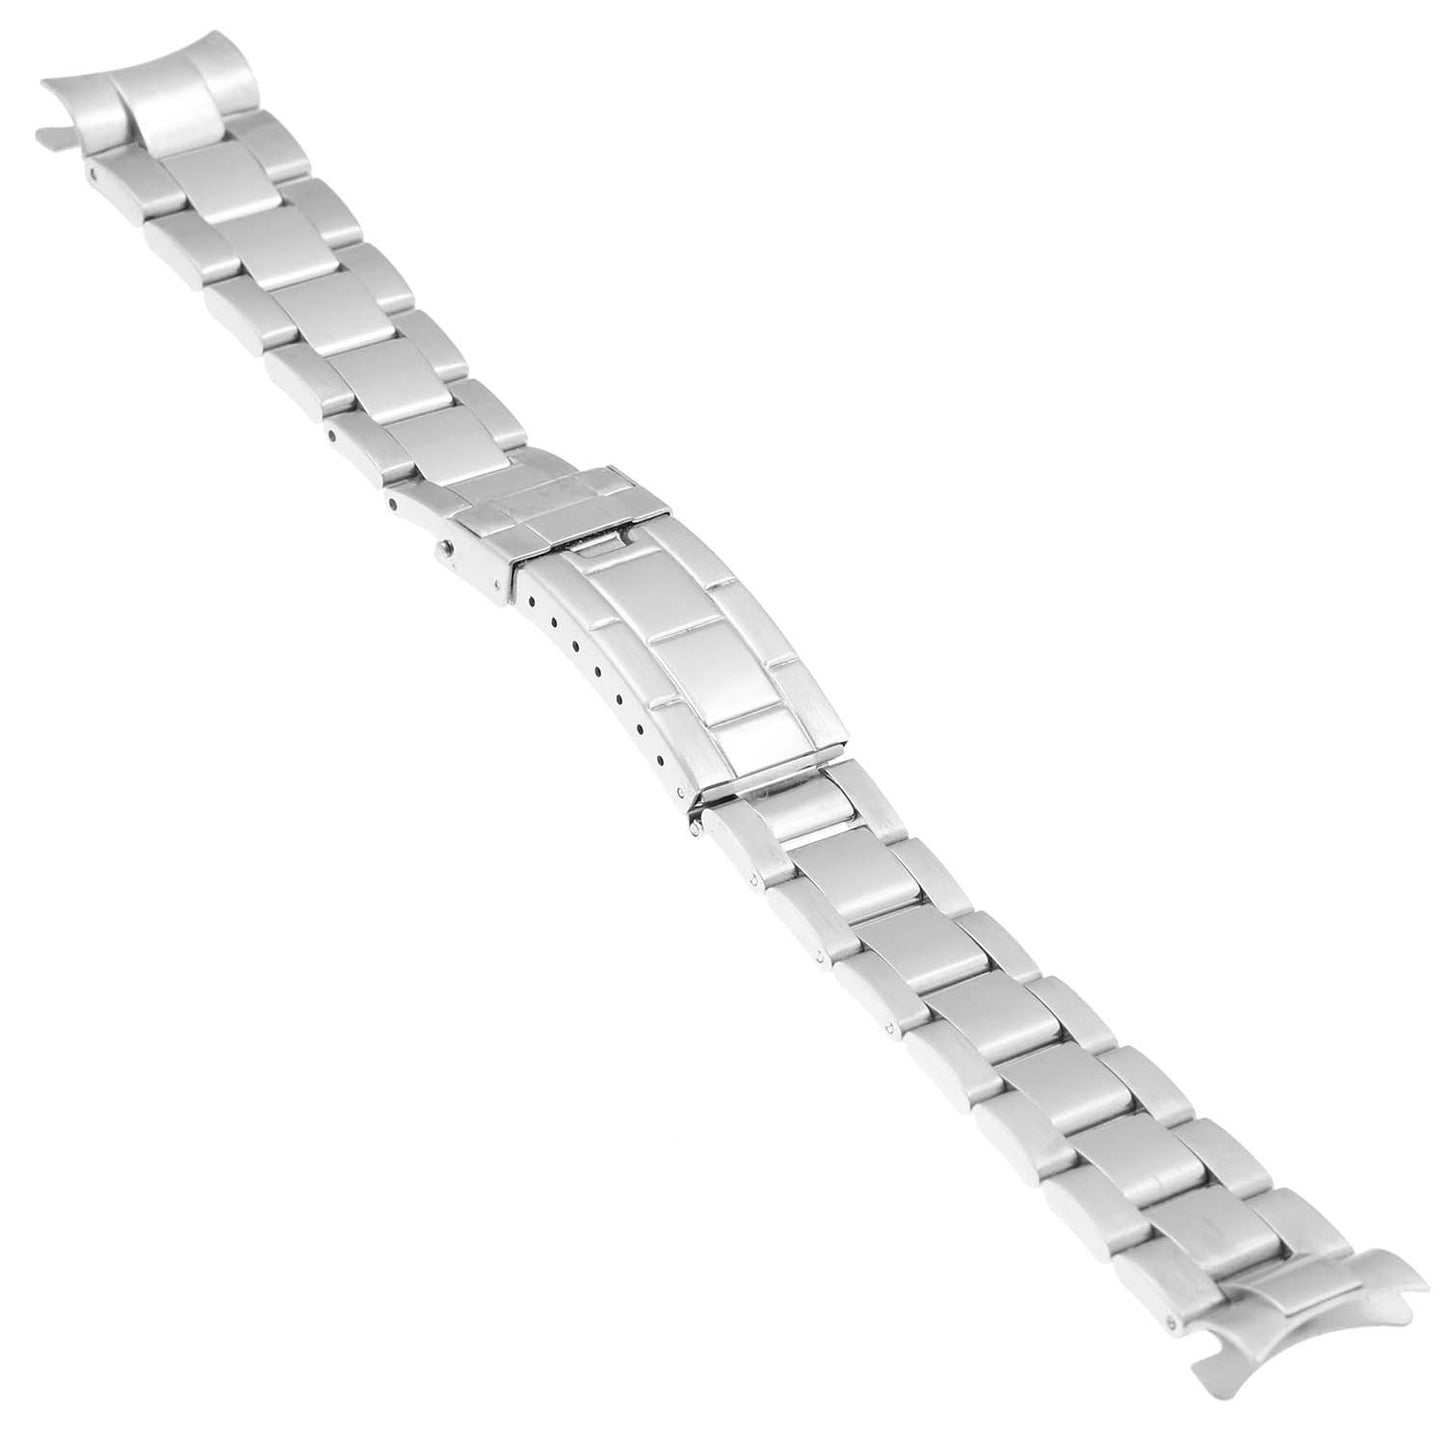 Oyster Watch Band Bracelet